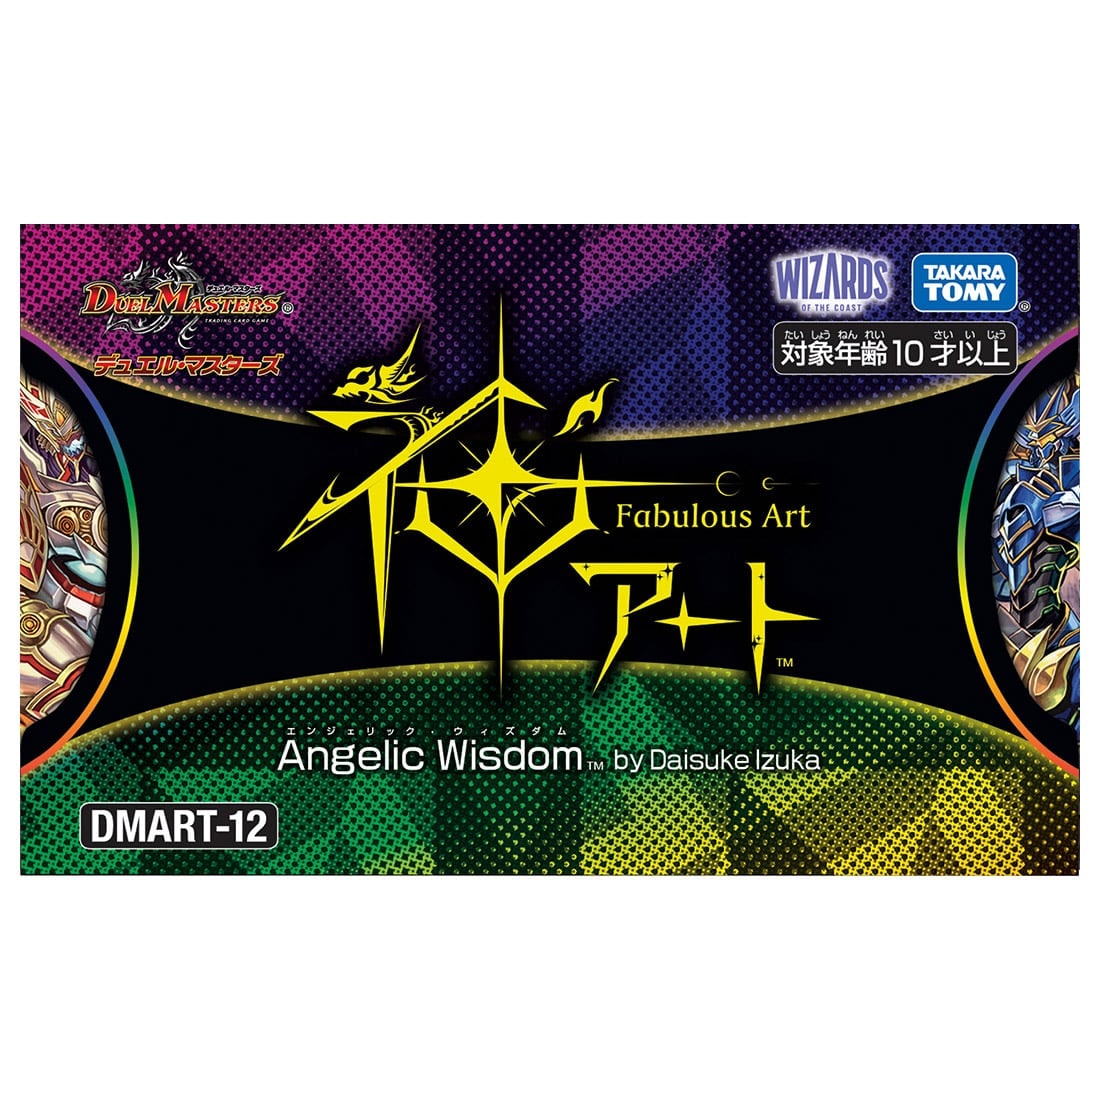 【限定販売】デュエル・マスターズTCG 神アート『DMART-12 Angelic Wisdom by Daisuke Izuka』トレカ-002